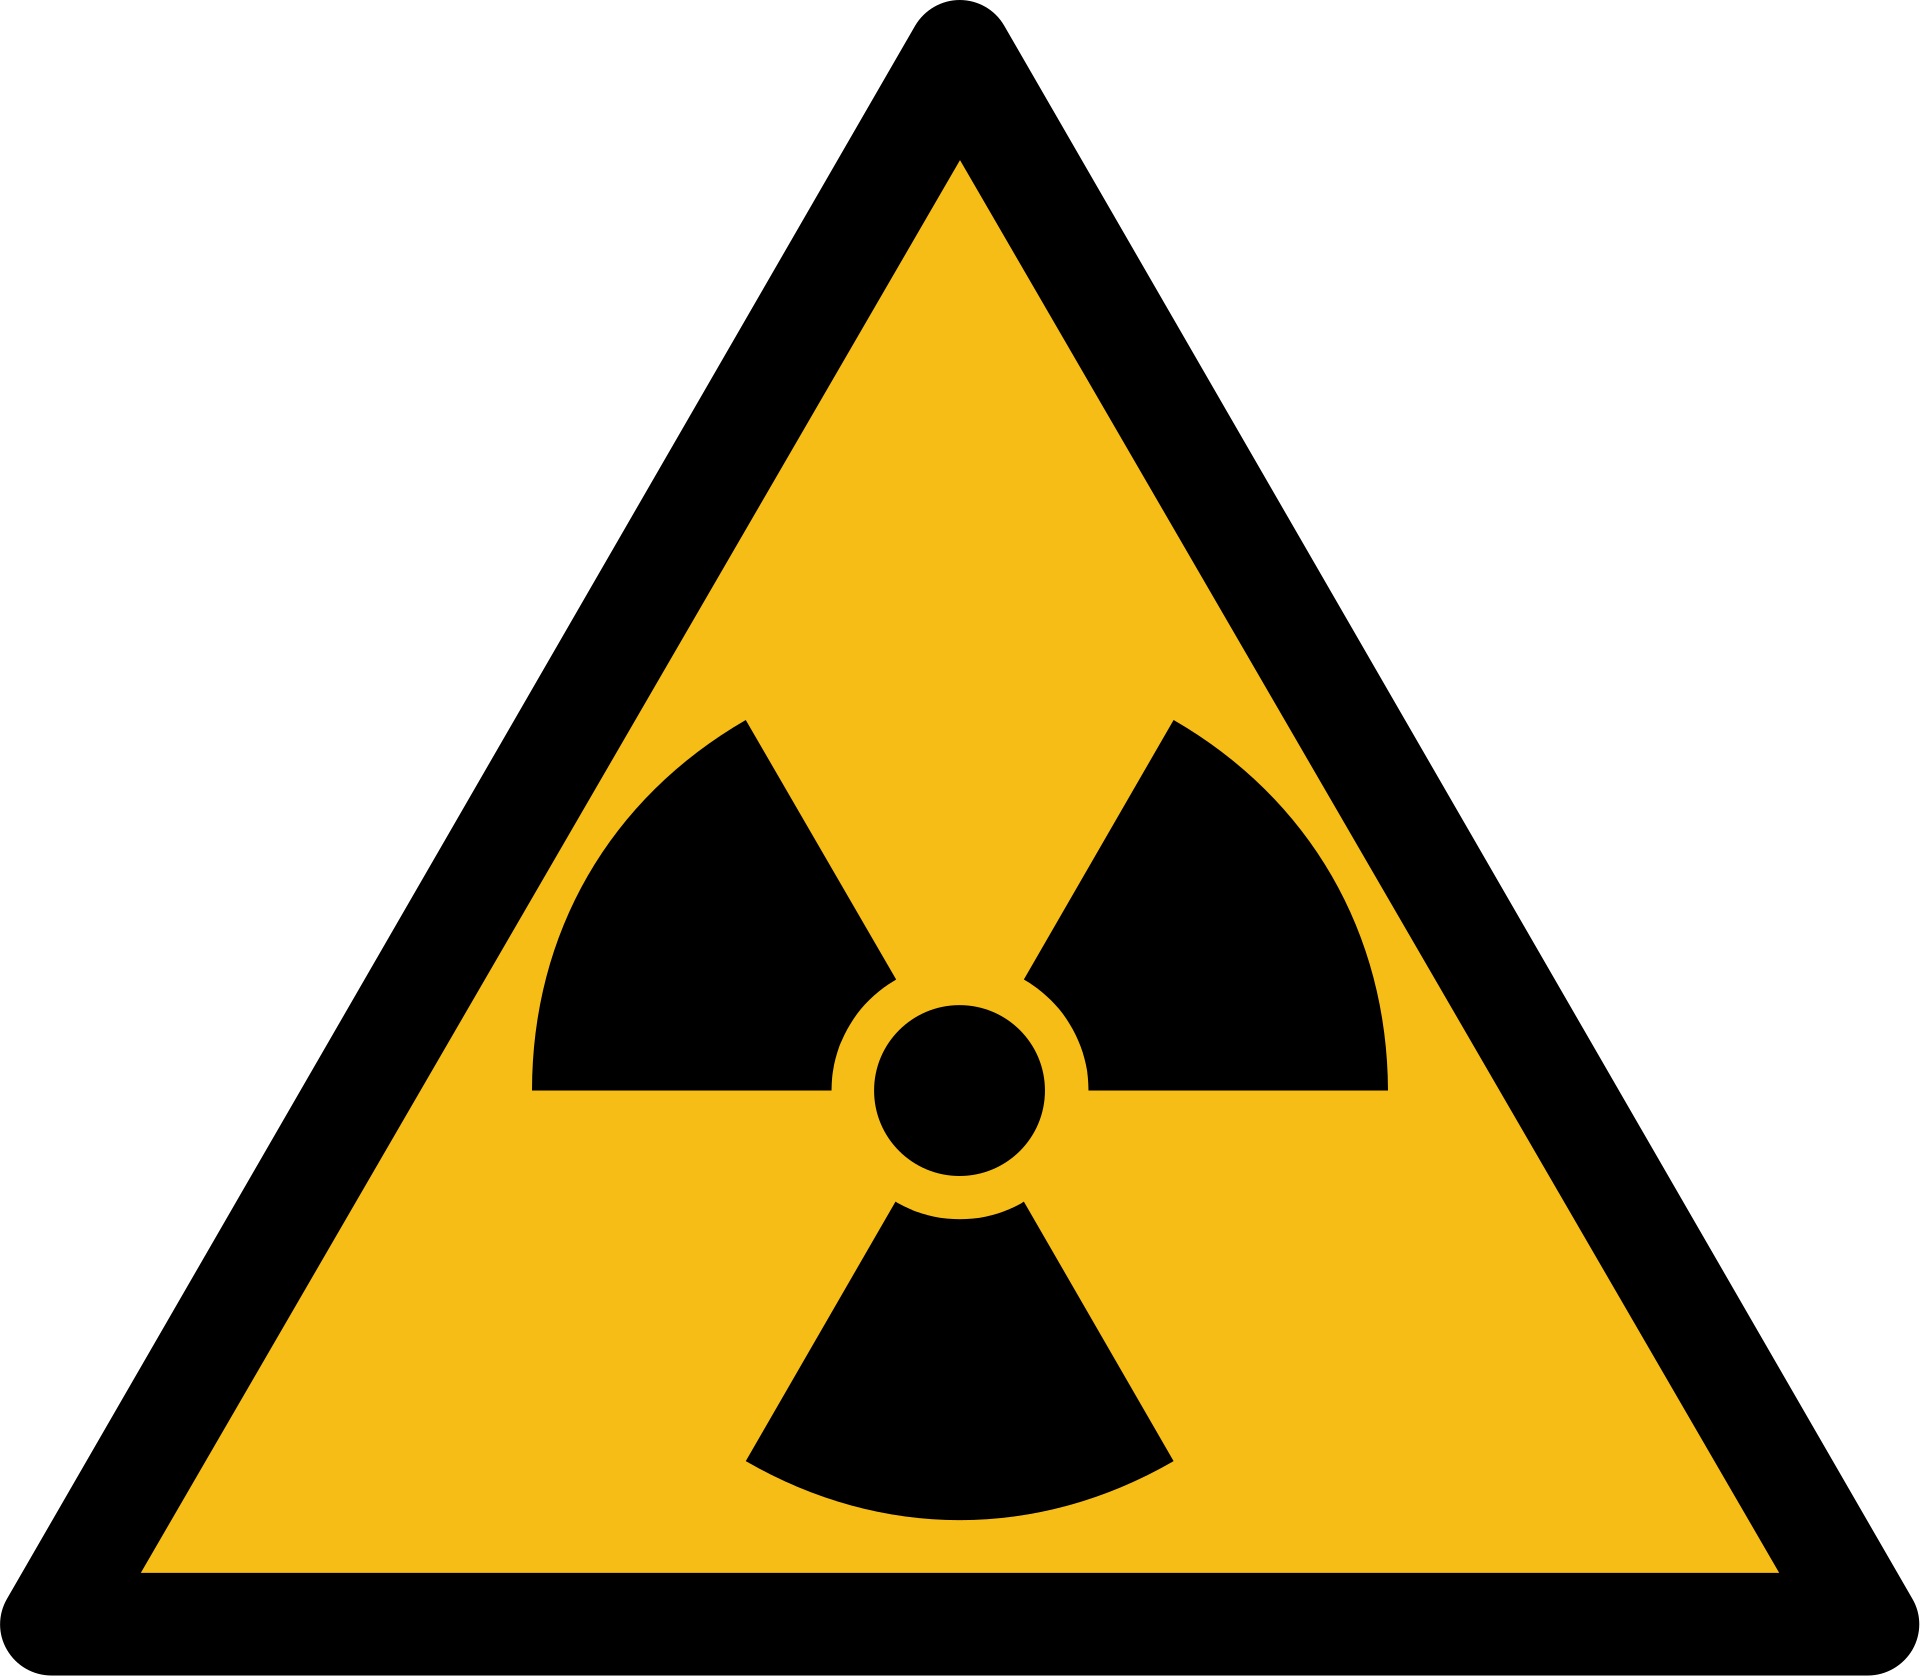 Radioaktive Strahlung erzeugt Mutationen im Pflanzengenom (MaxxL, gemeinfrei)